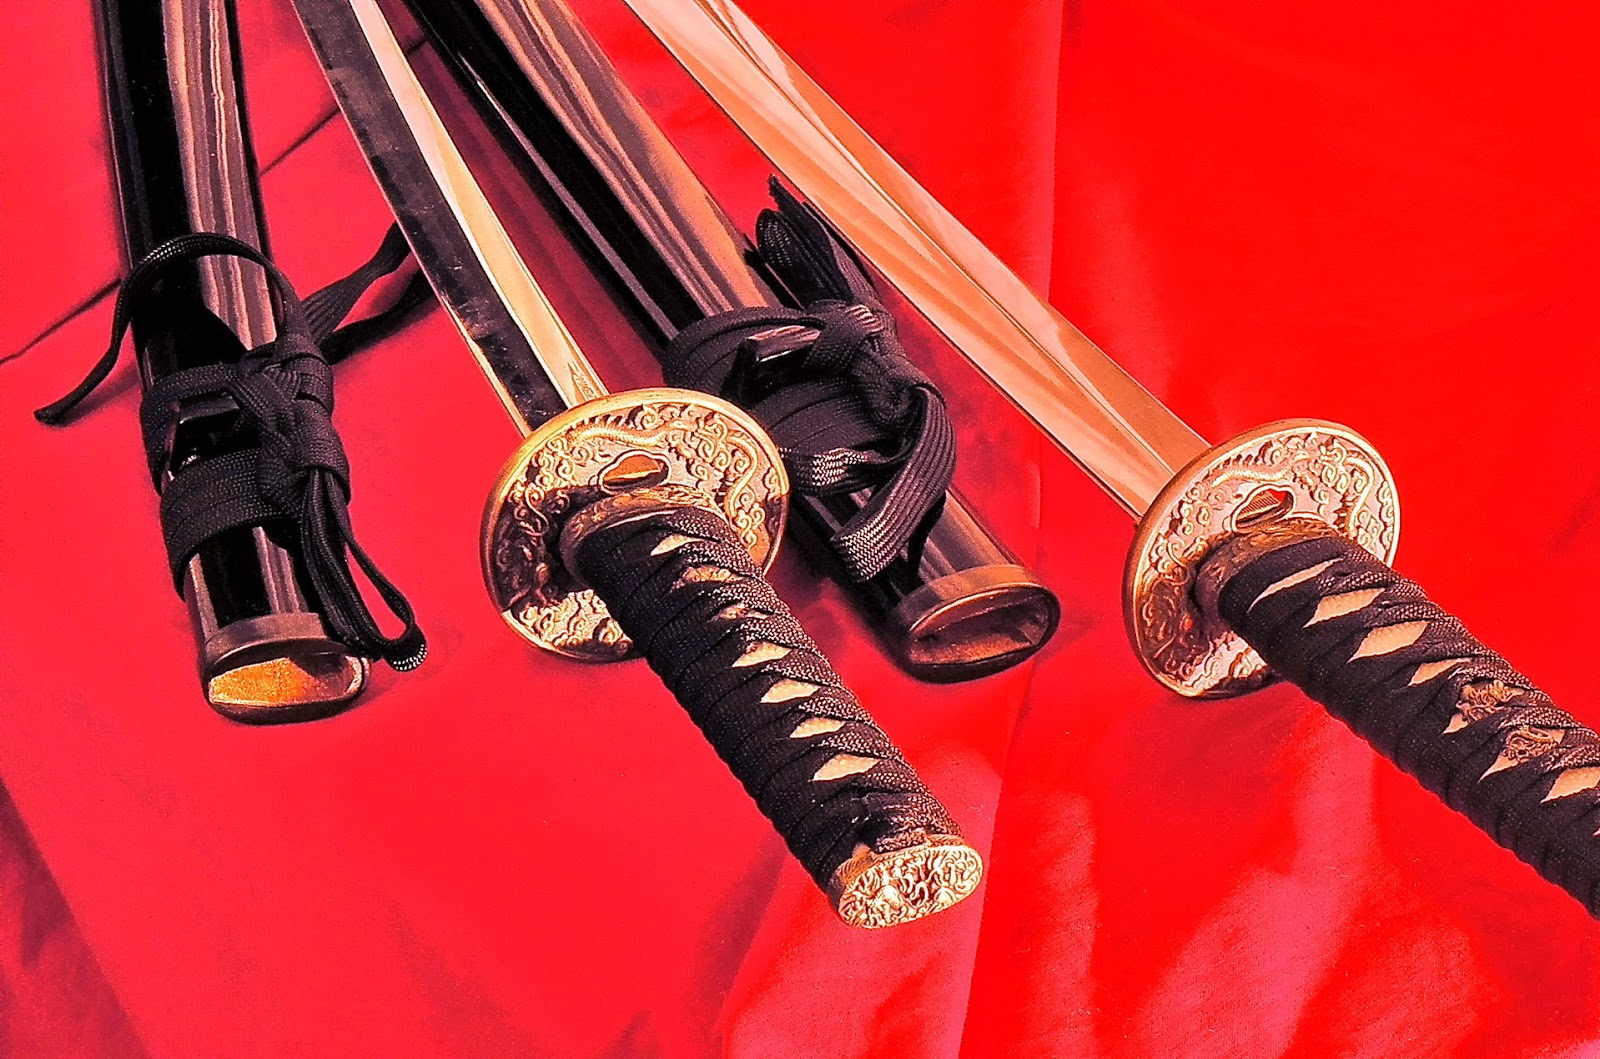 Меч японского императора. Группа меч фото. Японский меч обложка для ВК. Пистоль и шпага аудиокнига